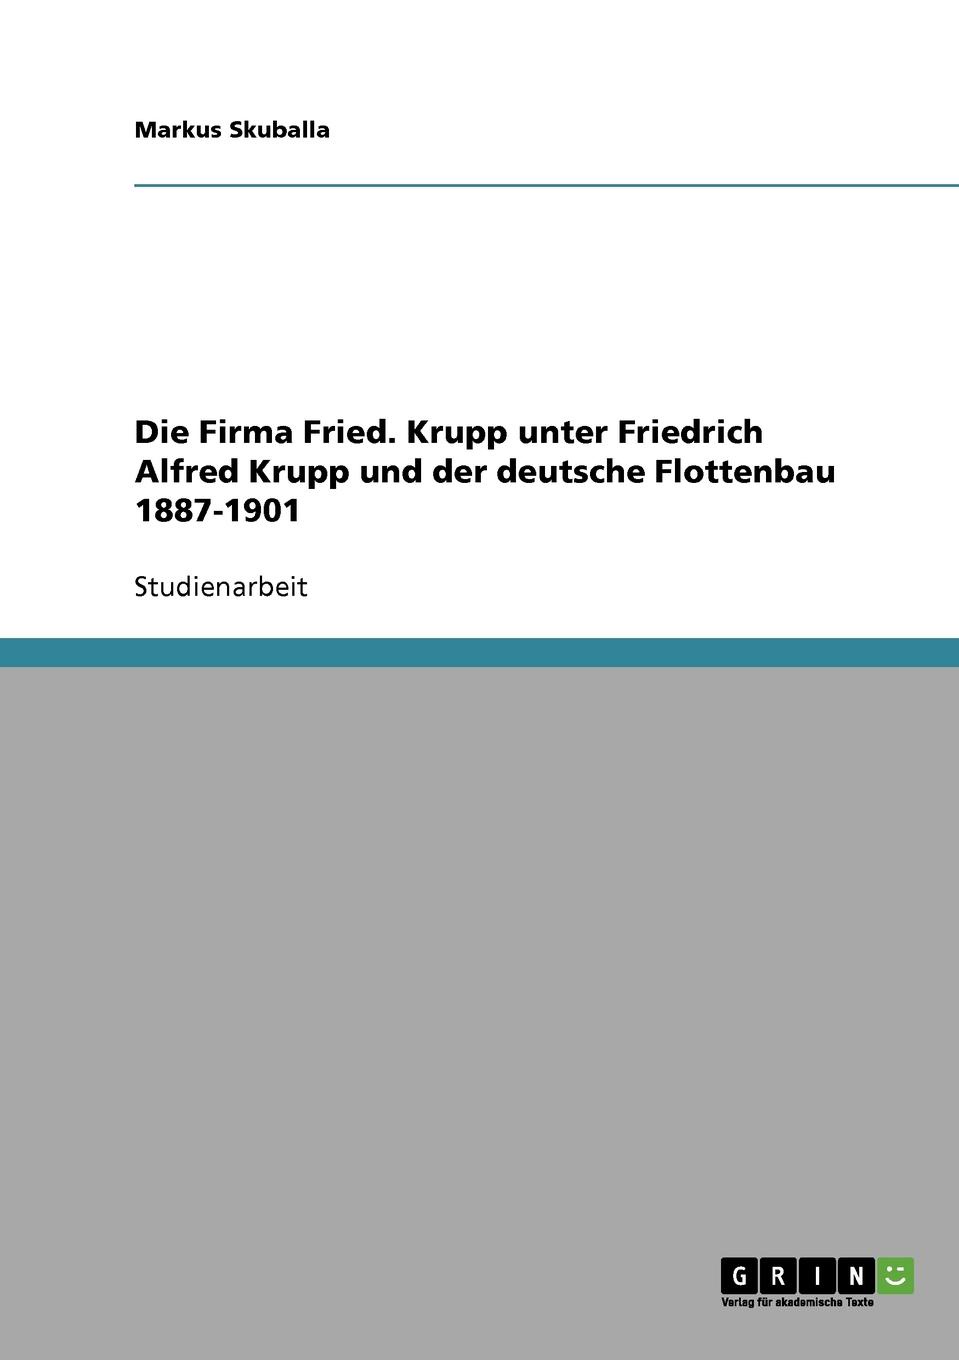 фото Die Firma Fried. Krupp unter Friedrich Alfred Krupp und der deutsche Flottenbau 1887-1901